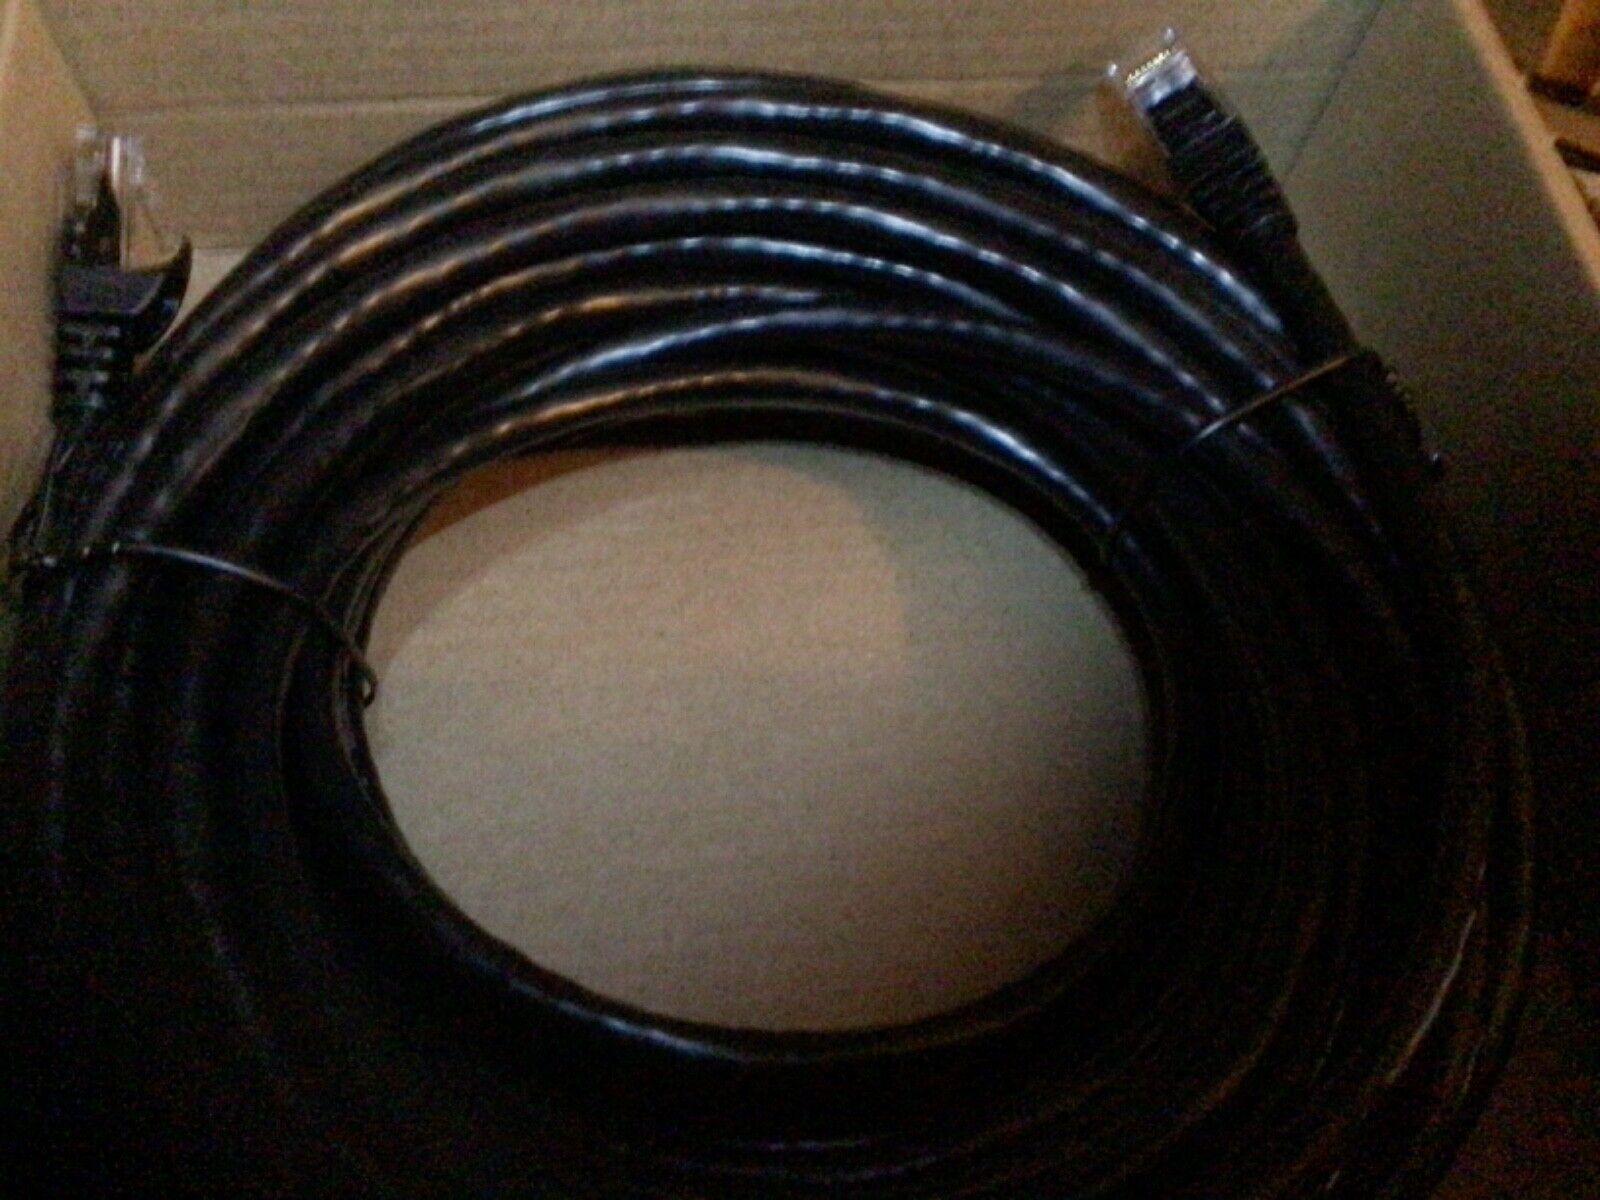 3 Amazon Basics RJ45 Cat-6 Gigabit Ethernet Patch Cables - 50 Foot, 3 pc